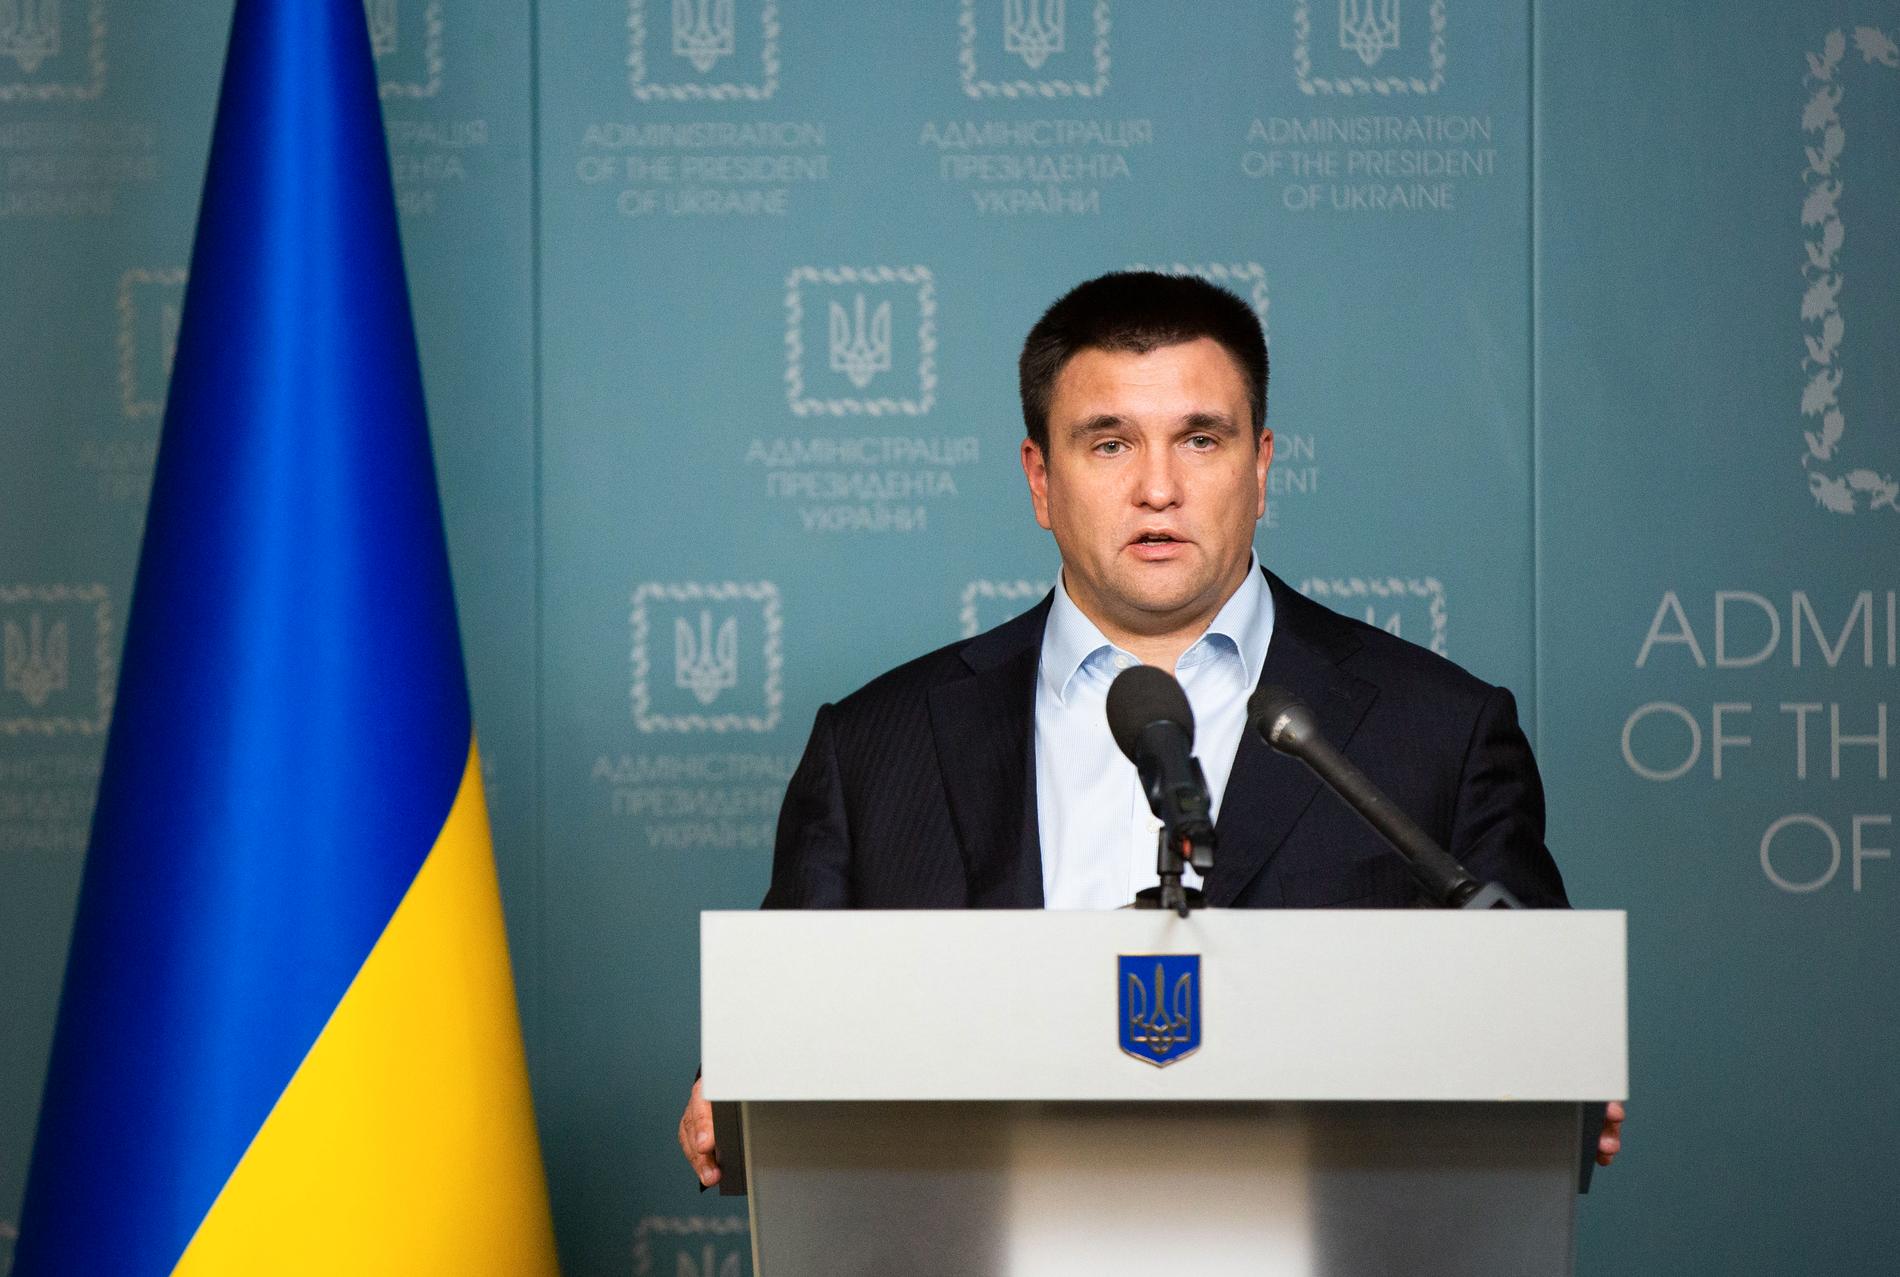 Ukrainas utrikesminister Pavlo Klimkin har också uttalat sig om händelsen. 